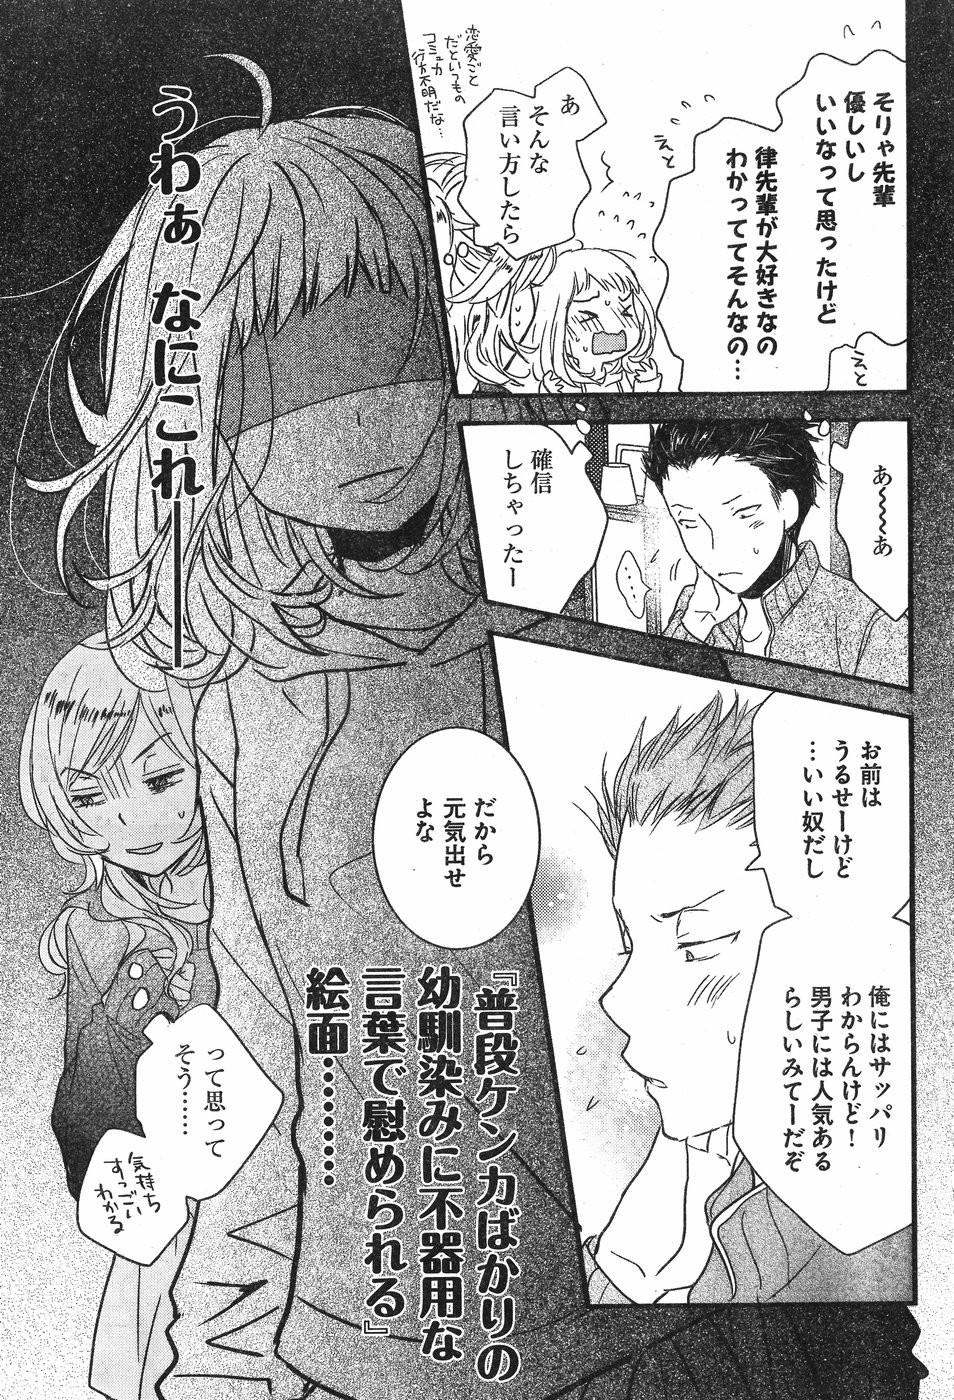 Bokura wa Minna Kawaisou - Chapter 84 - Page 13